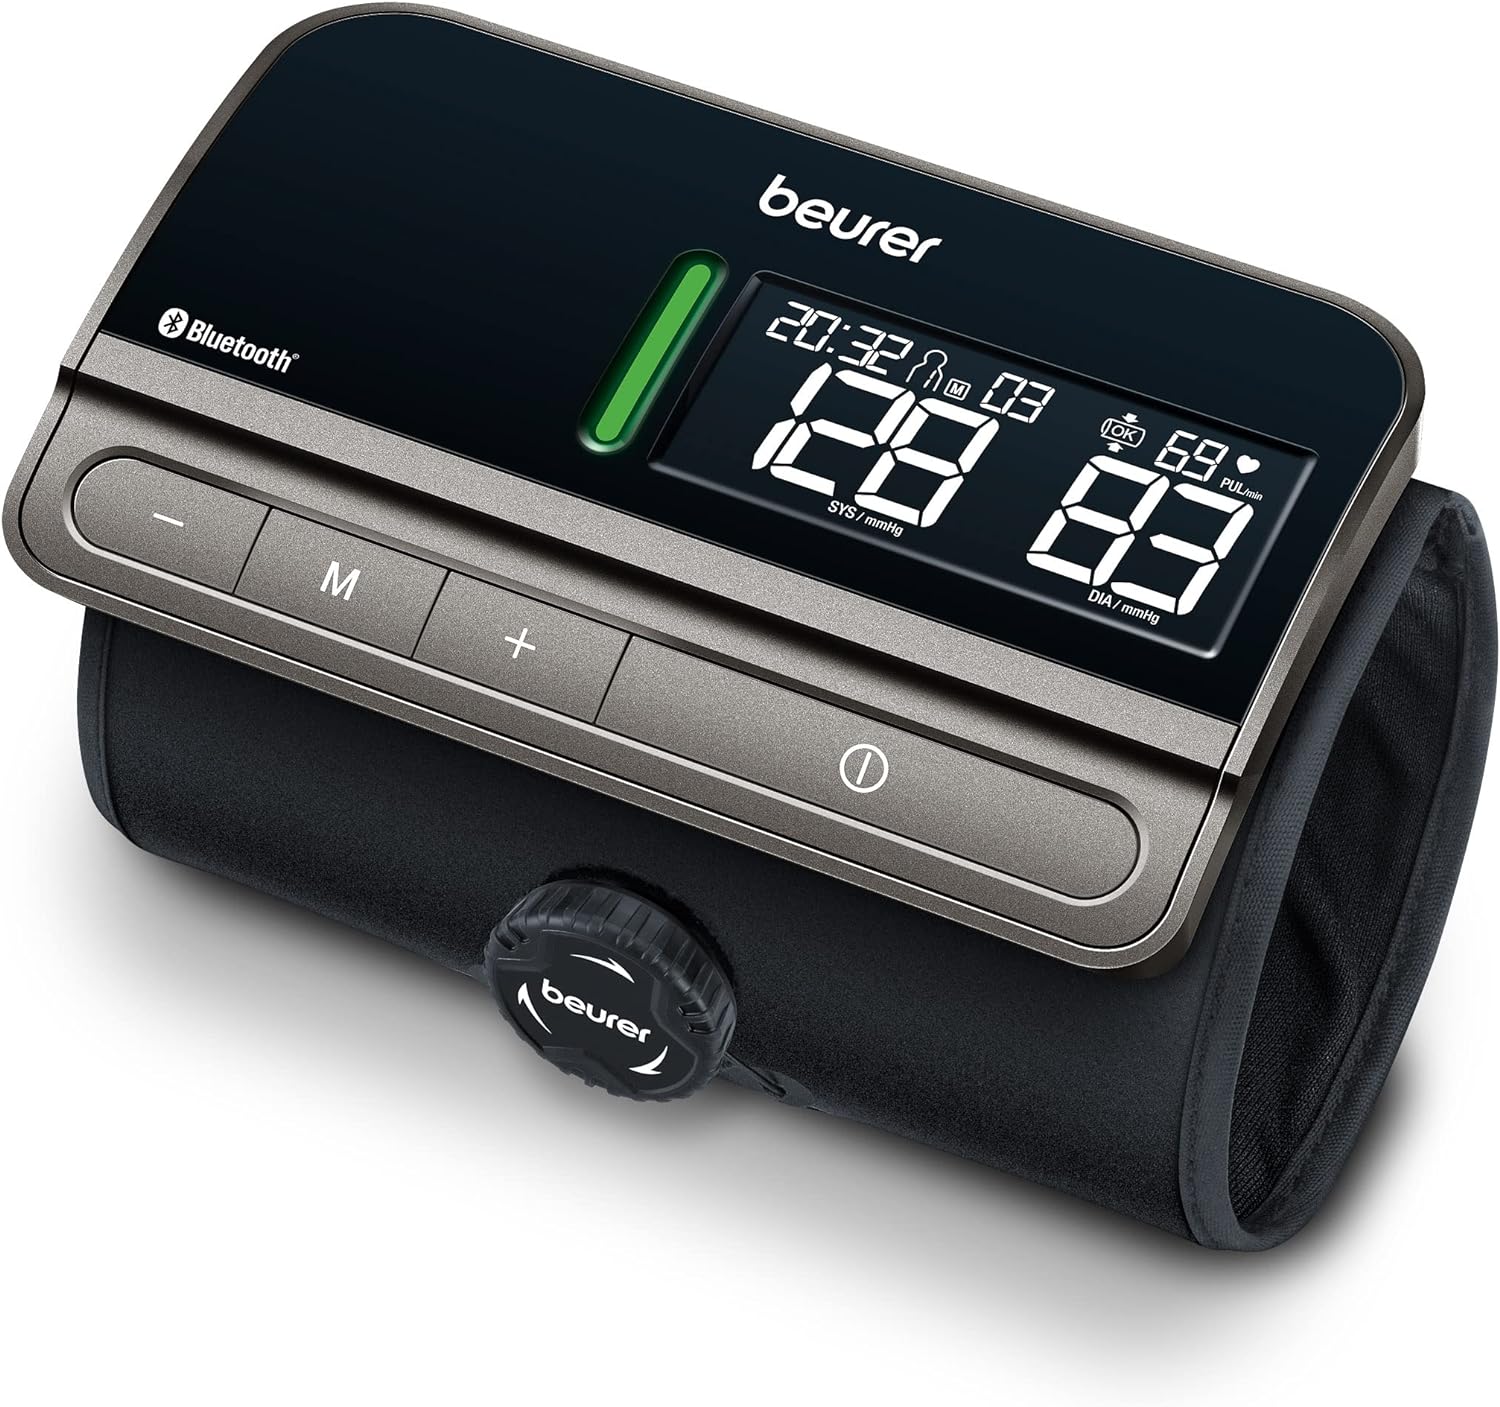 Beurer BM 81 Blood Pressure Monitor